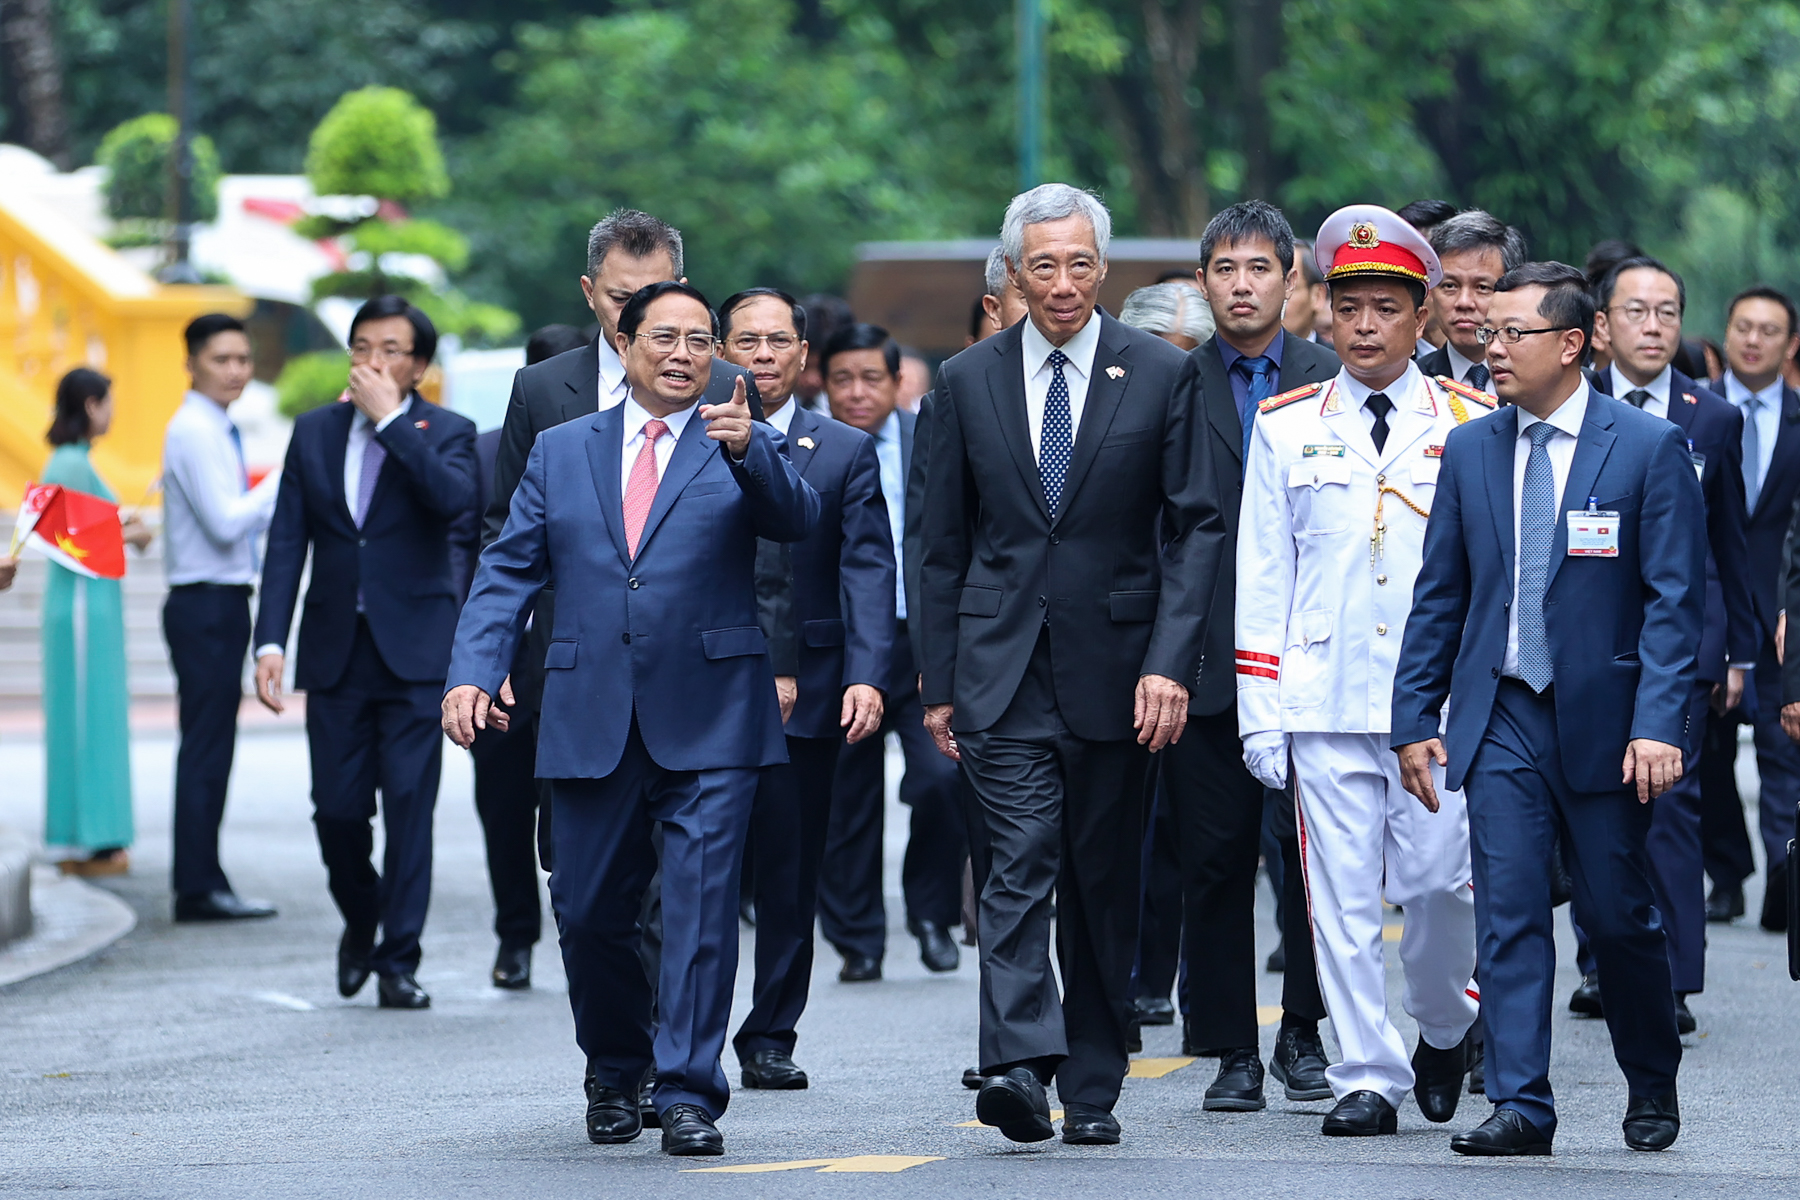 Chuyến thăm lần này của Thủ tướng Lý Hiển Long là chuyến thăm thứ 5 của ông tới Việt Nam trên cương vị Thủ tướng